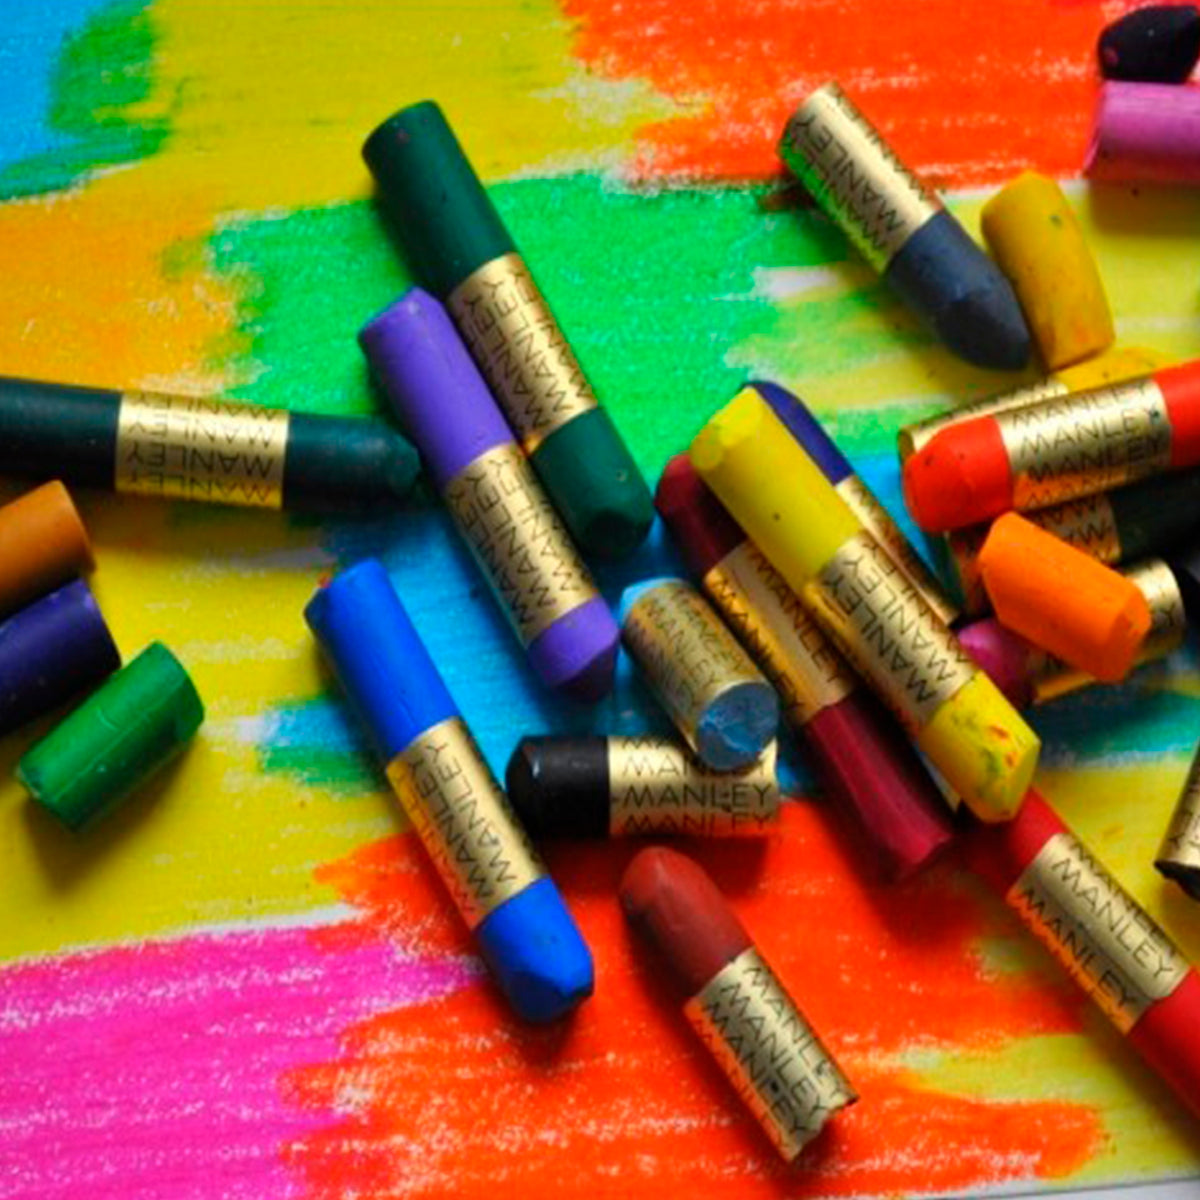 ALPINO Manley - Caja con 15 Lápices de Cera Blanda en Colores Brillantes